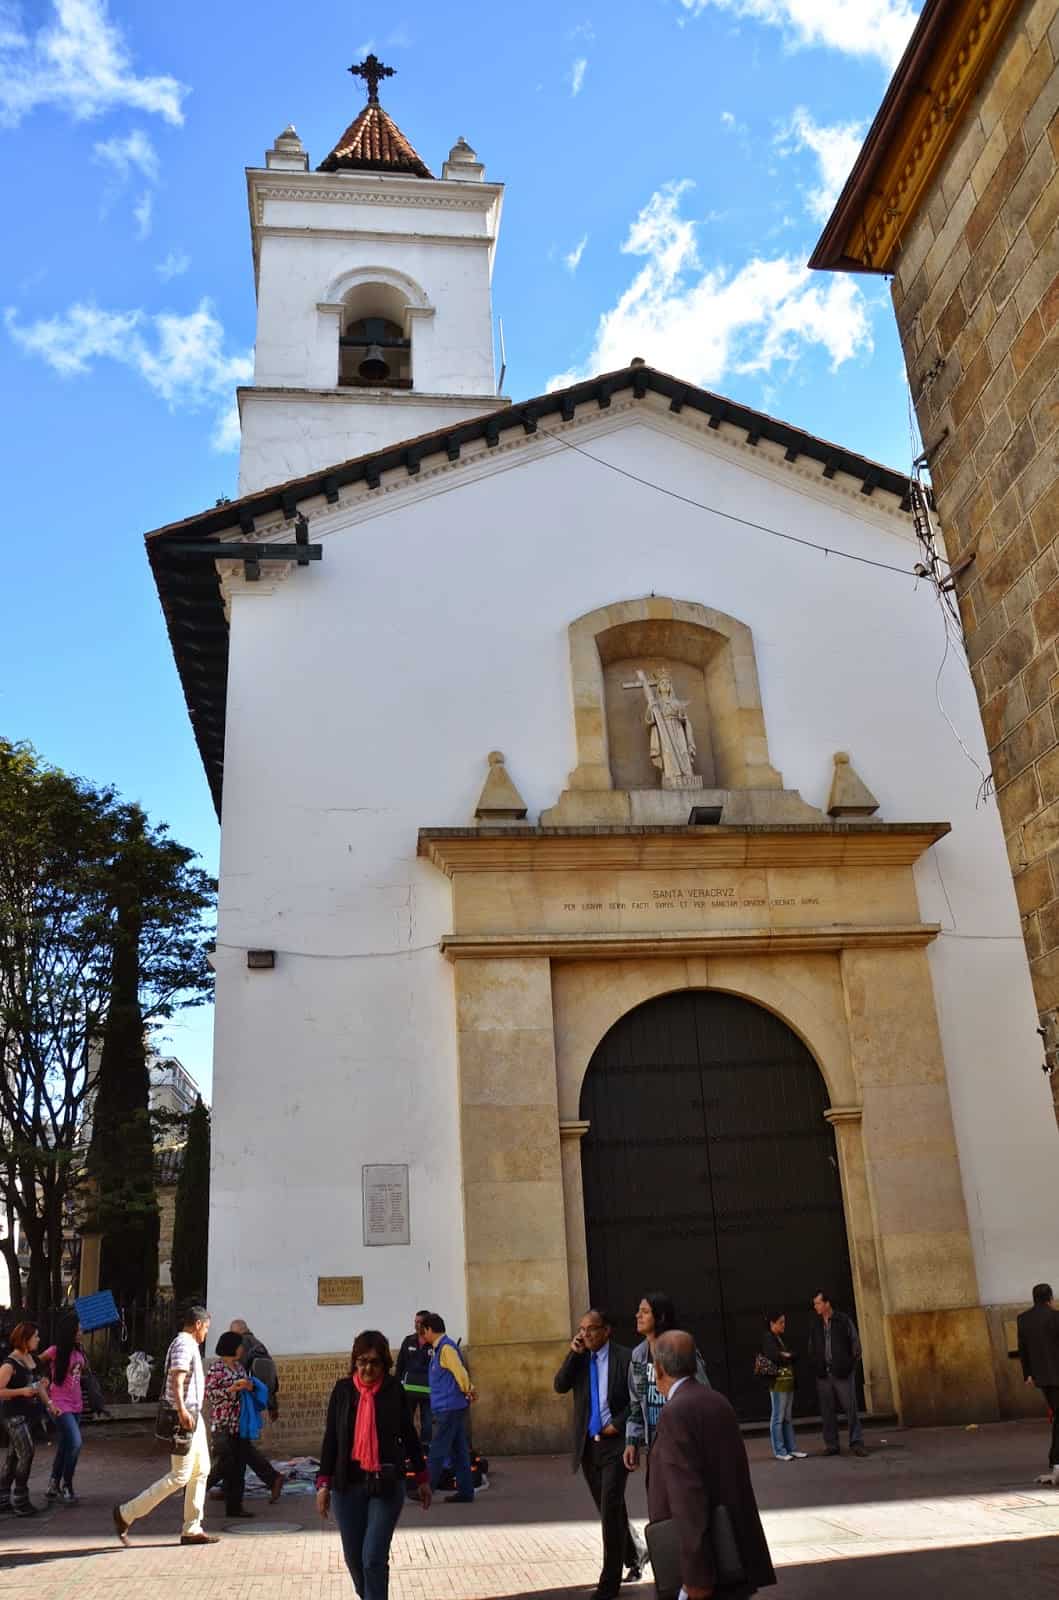 Veracruz Church in Santa Fe de Bogotá, Colombia